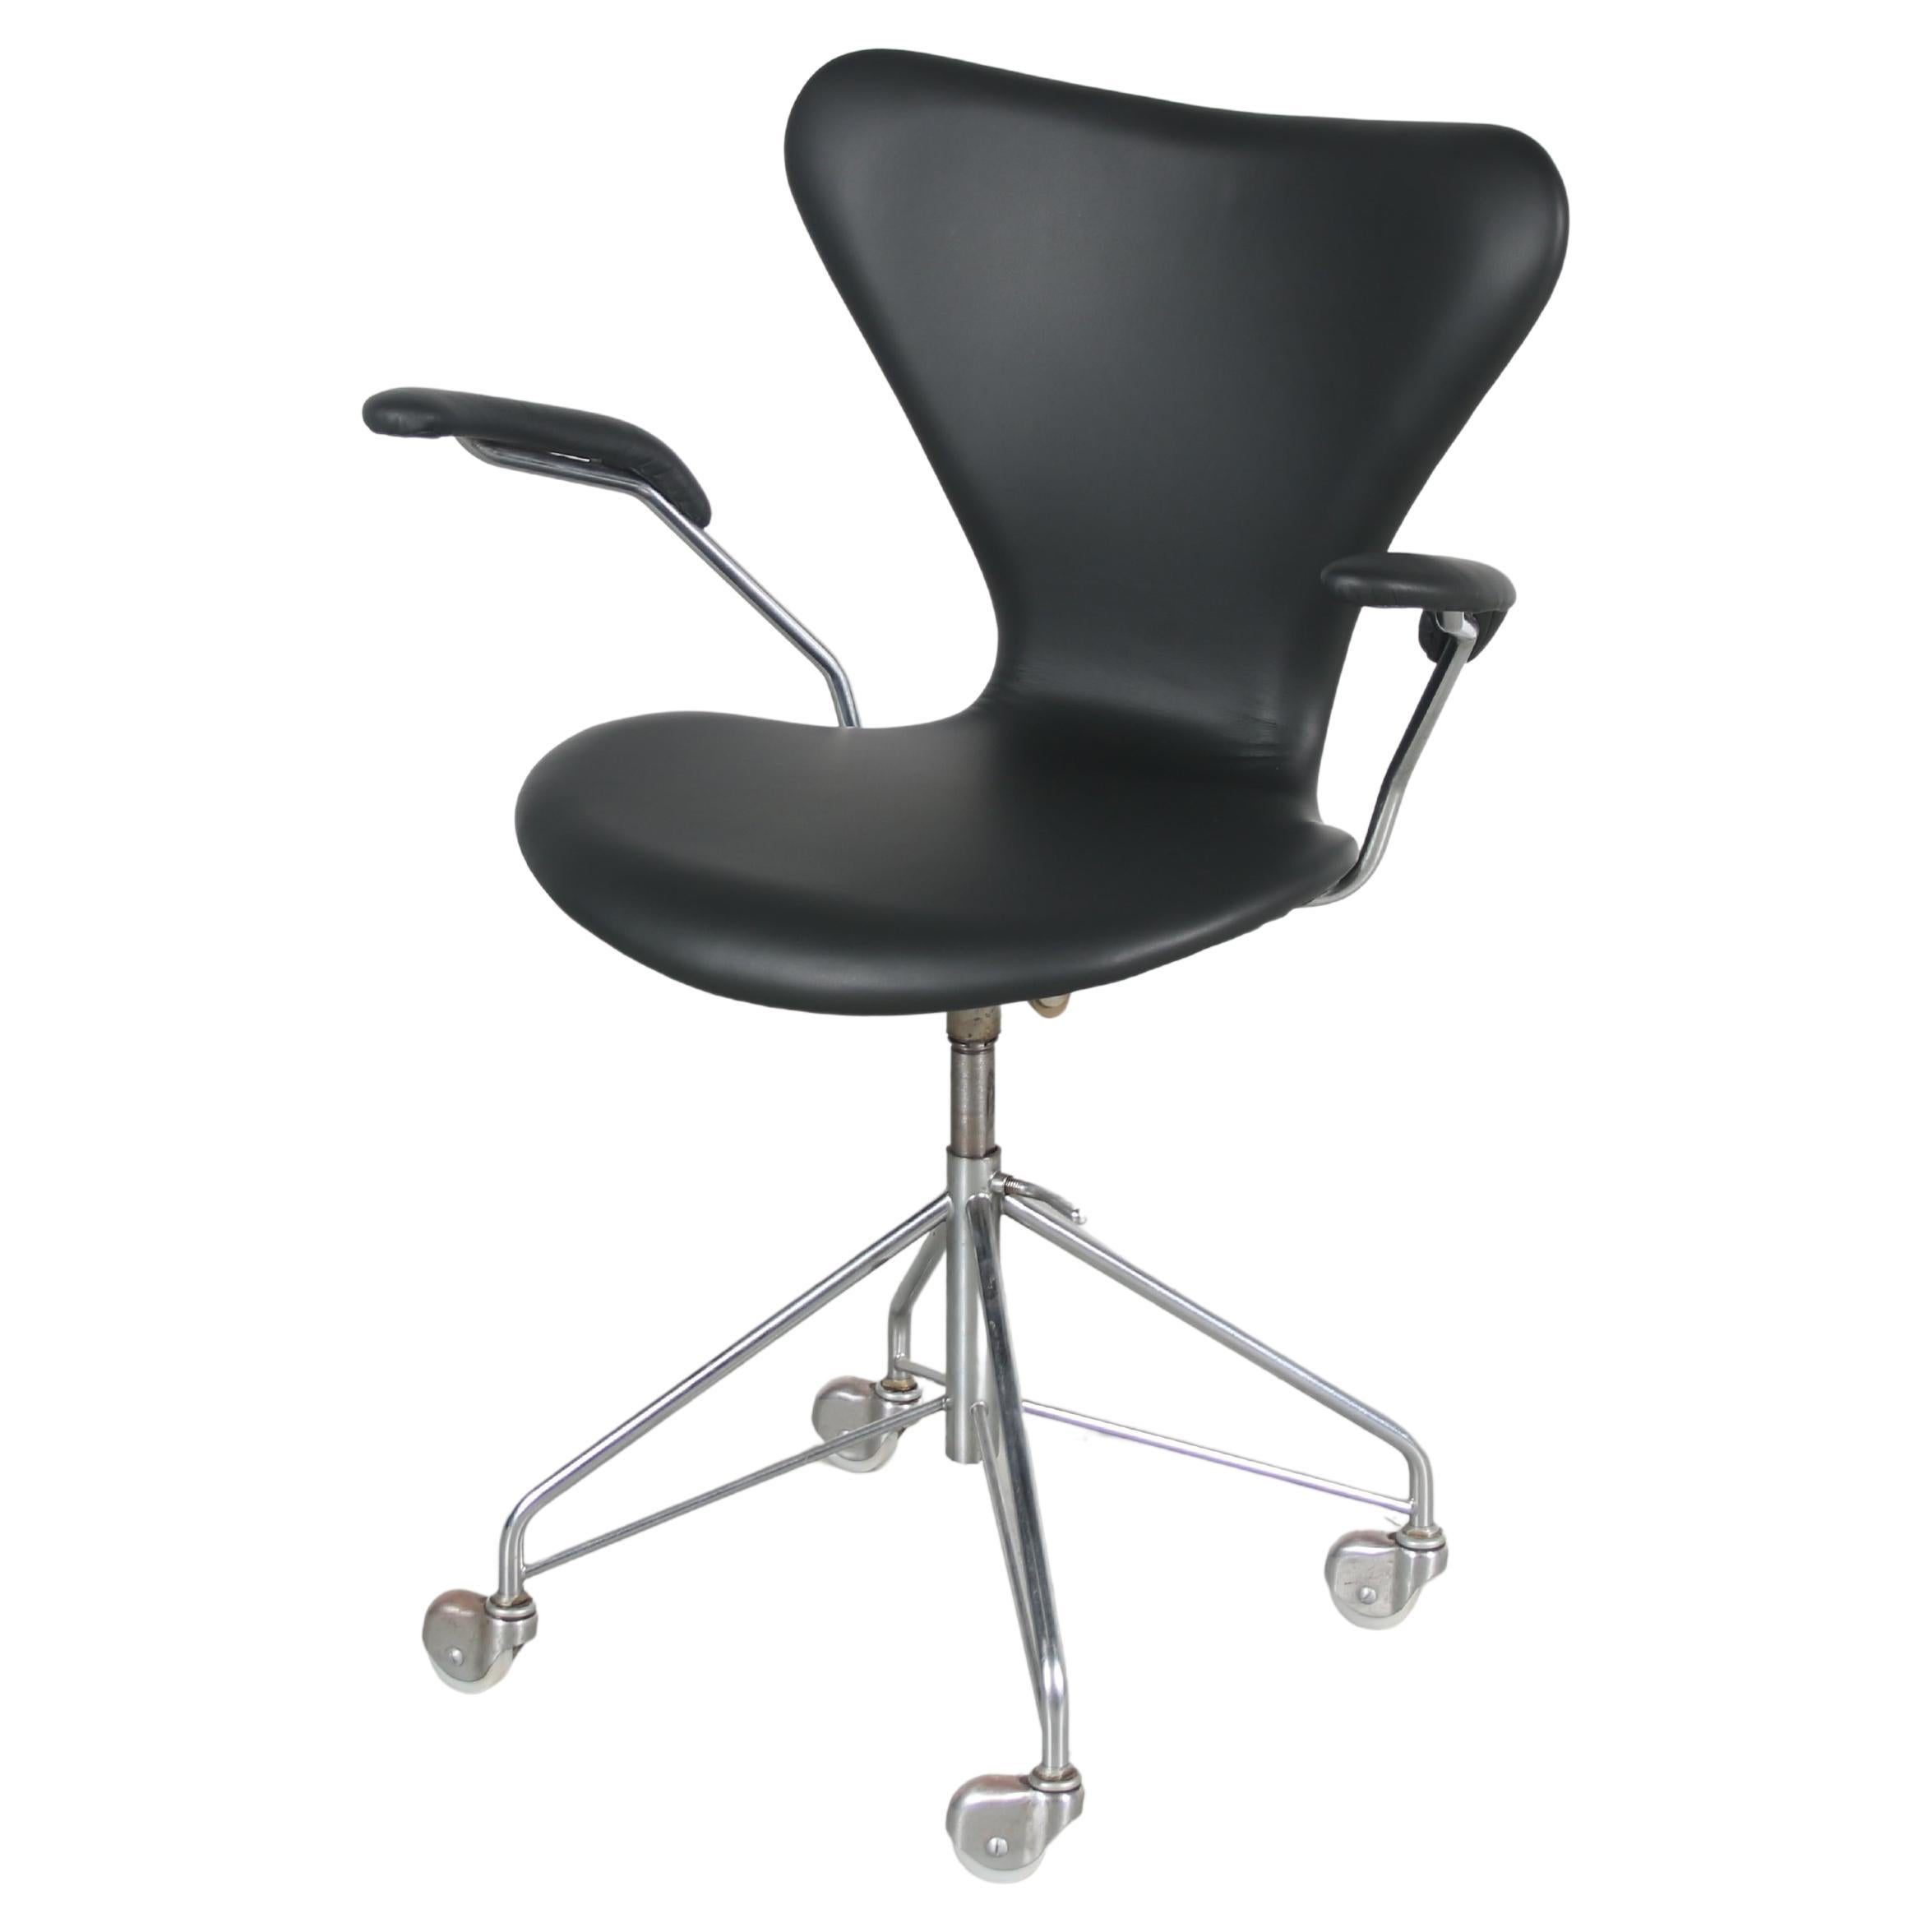 1950s “3217” Swivel desk chair by Arne Jacobsen for Fritz Hansen, Denmark